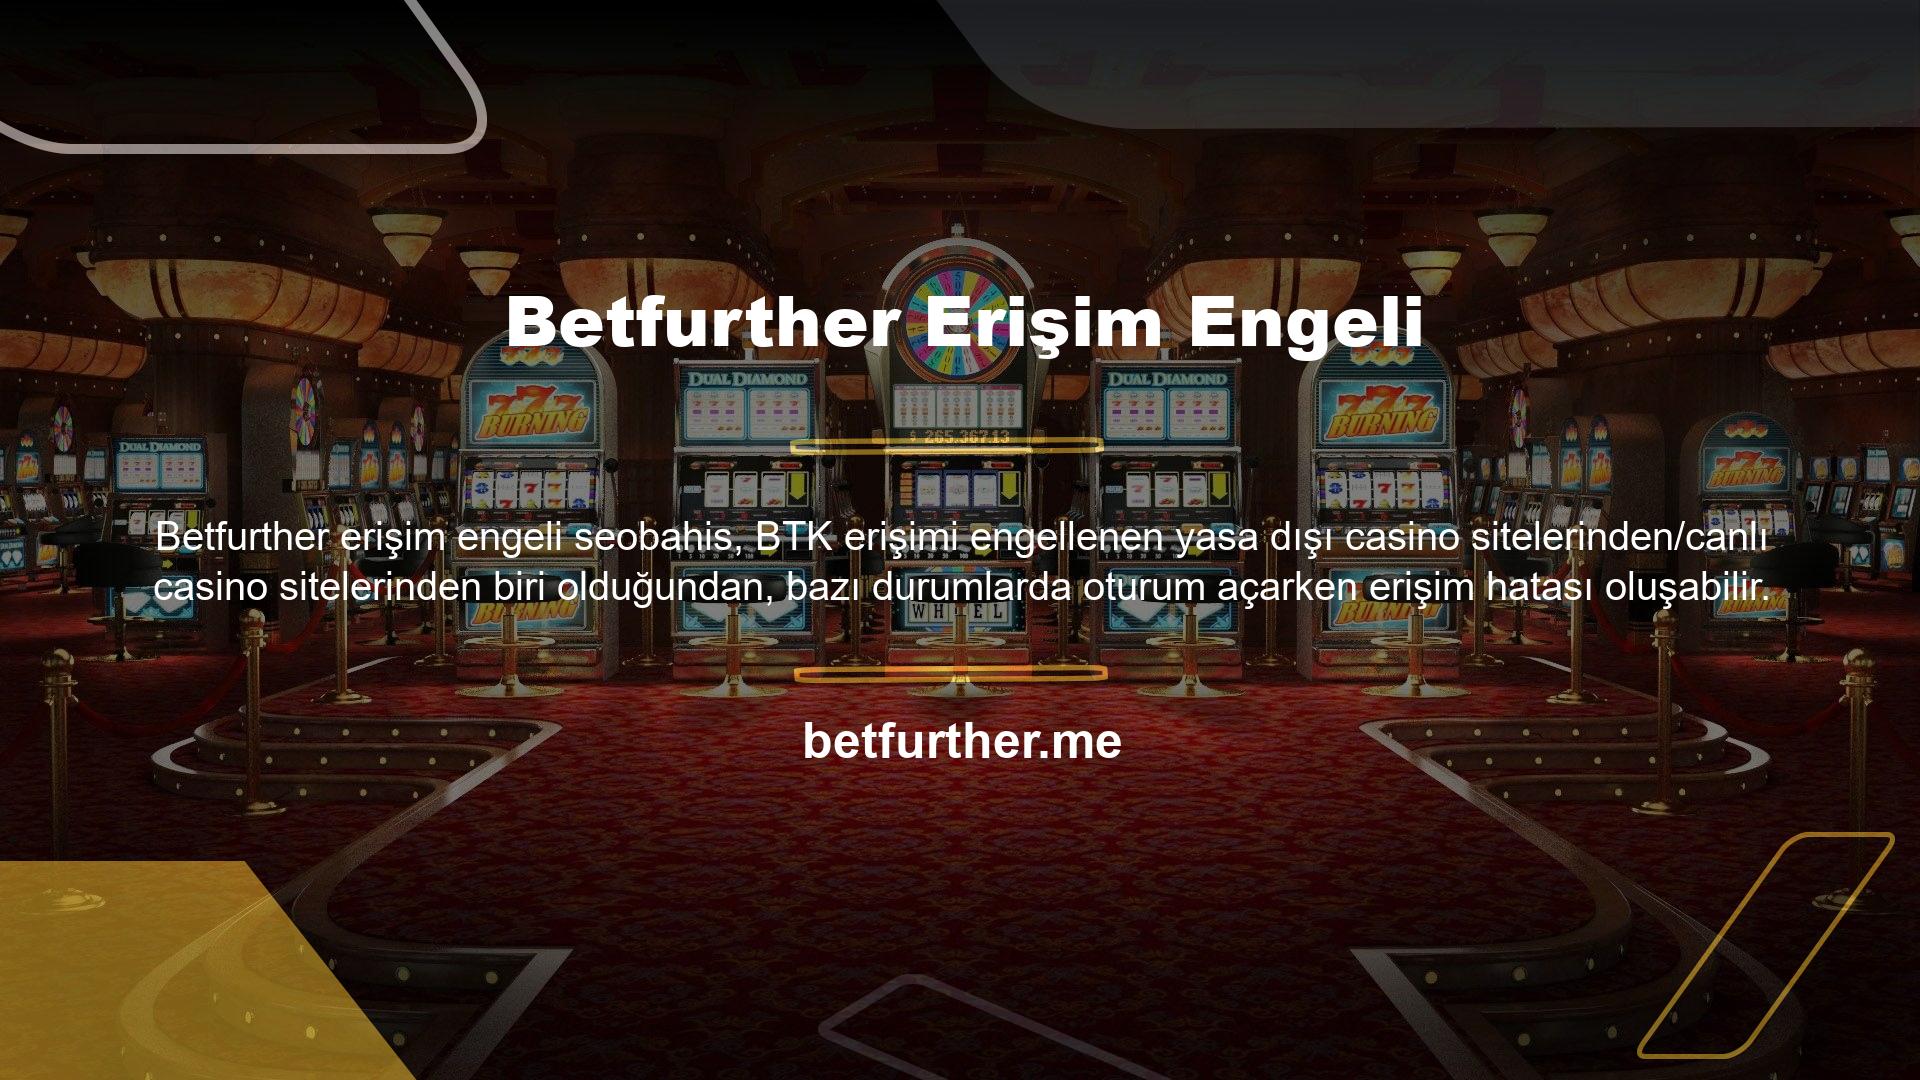 En güvenilir bahis sitelerinden biri olan Betfurther, web sitesi altyapısı (bilinen en güçlü altyapı) tarafından desteklenmektedir ve çok çeşitli bahis seçenekleri sunan ve her yerde bahis oynayabileceğiniz bir canlı bahis sitesidir